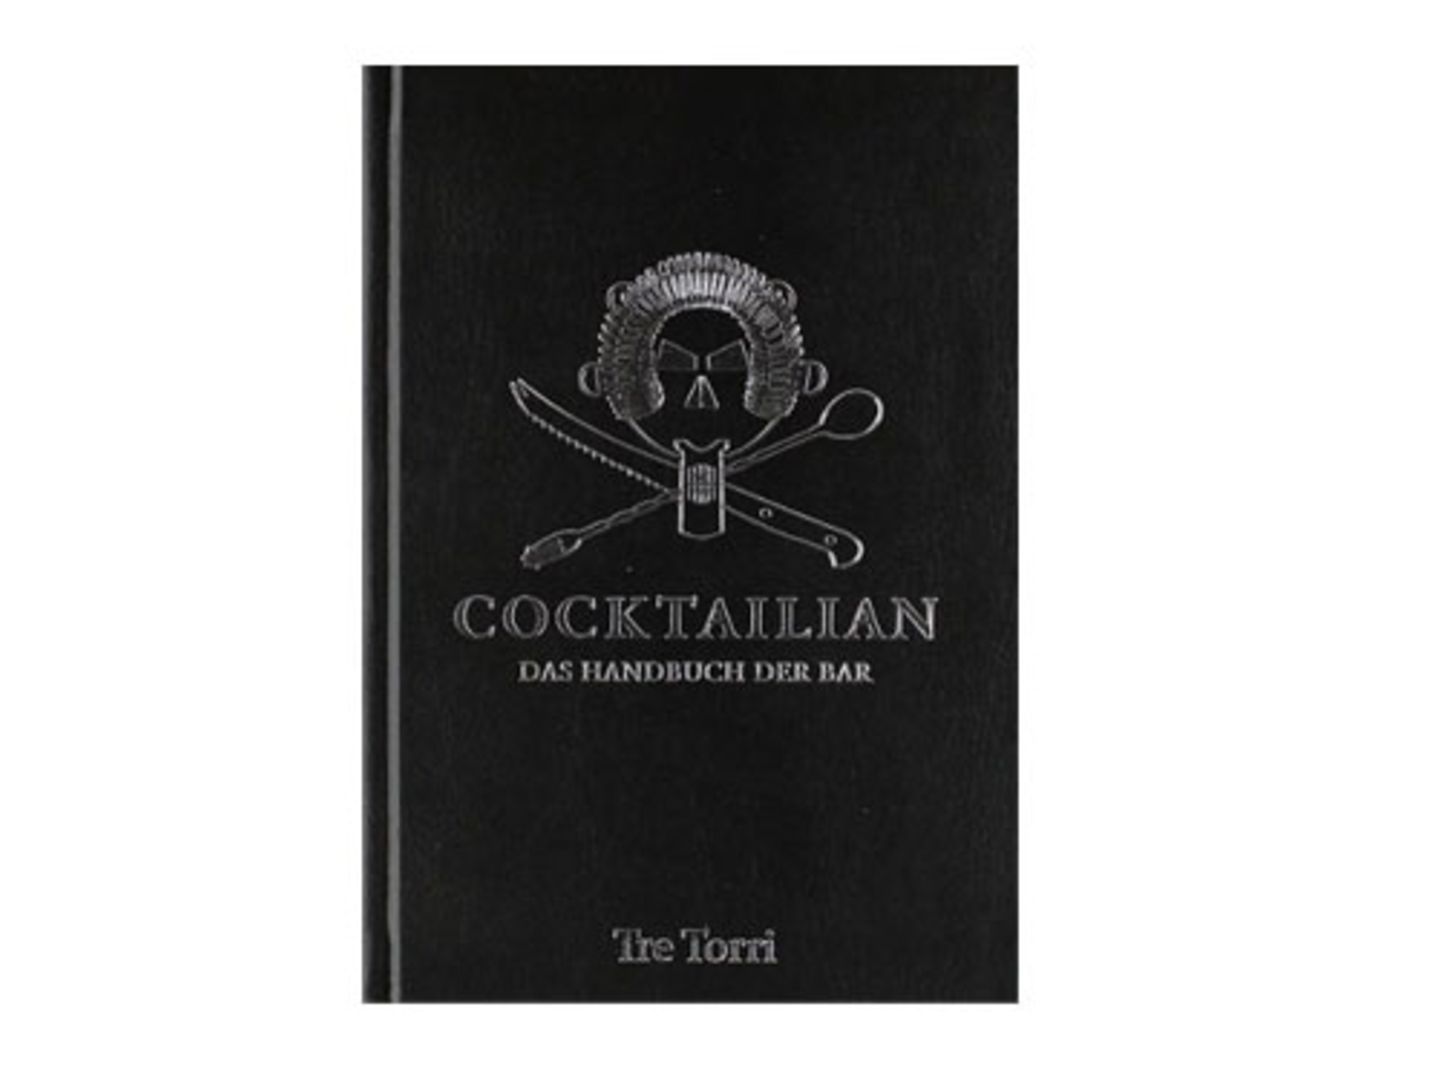 Cocktailian Handbuch Bar